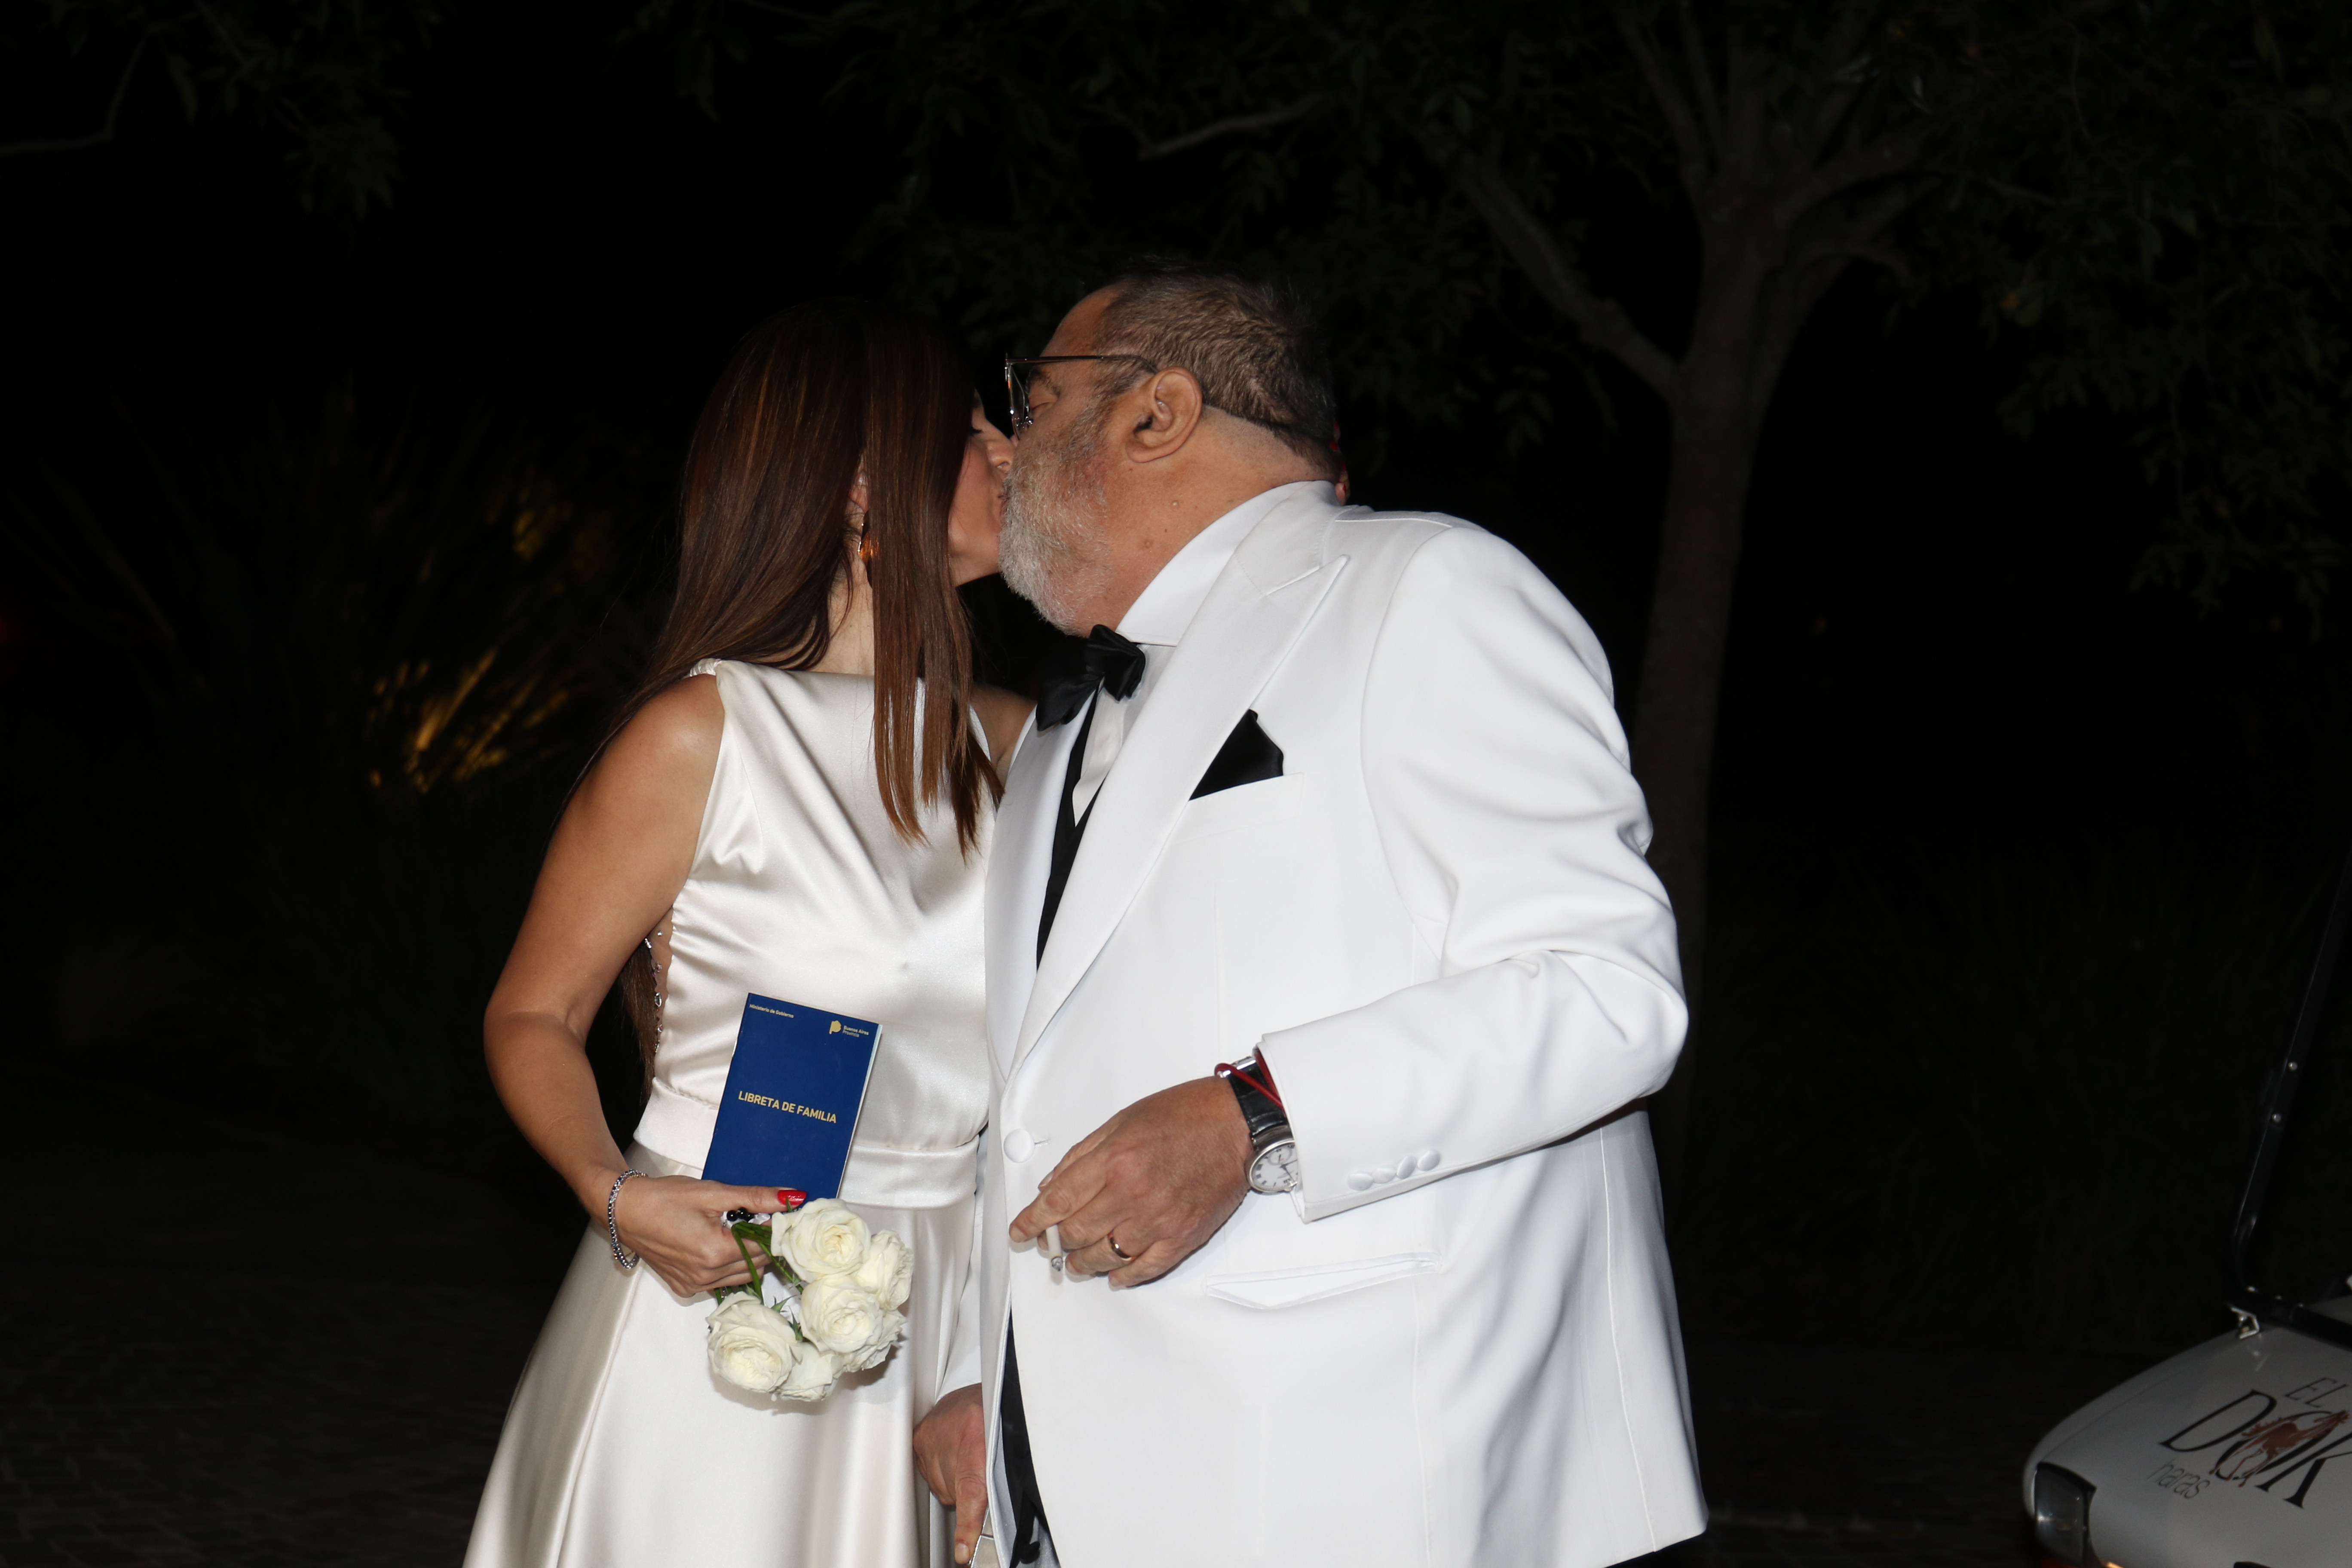 El beso del matrimonio: Jorge Lanata y Elba Marcovecchio dieron el "sí, quiero" (Ramiro Souto)